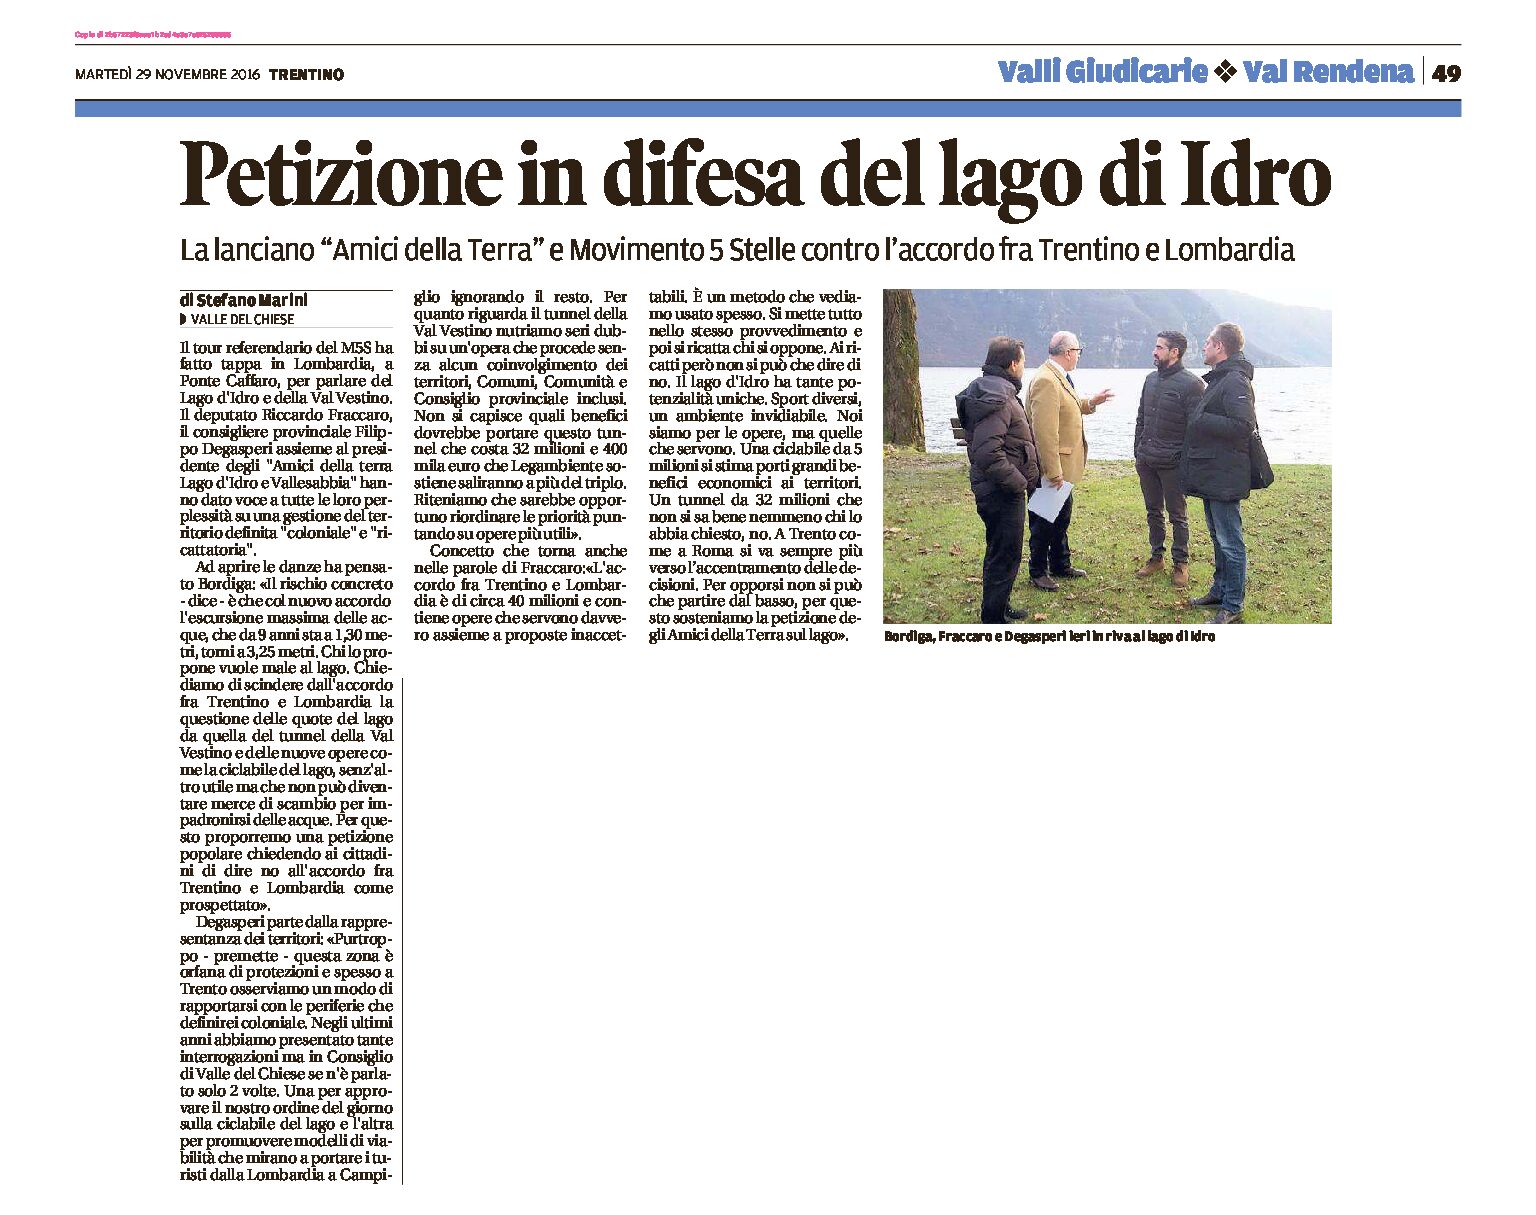 Lago d’Idro e val Vestino: petizione contro l’accordo tra Trentino e Lombardia